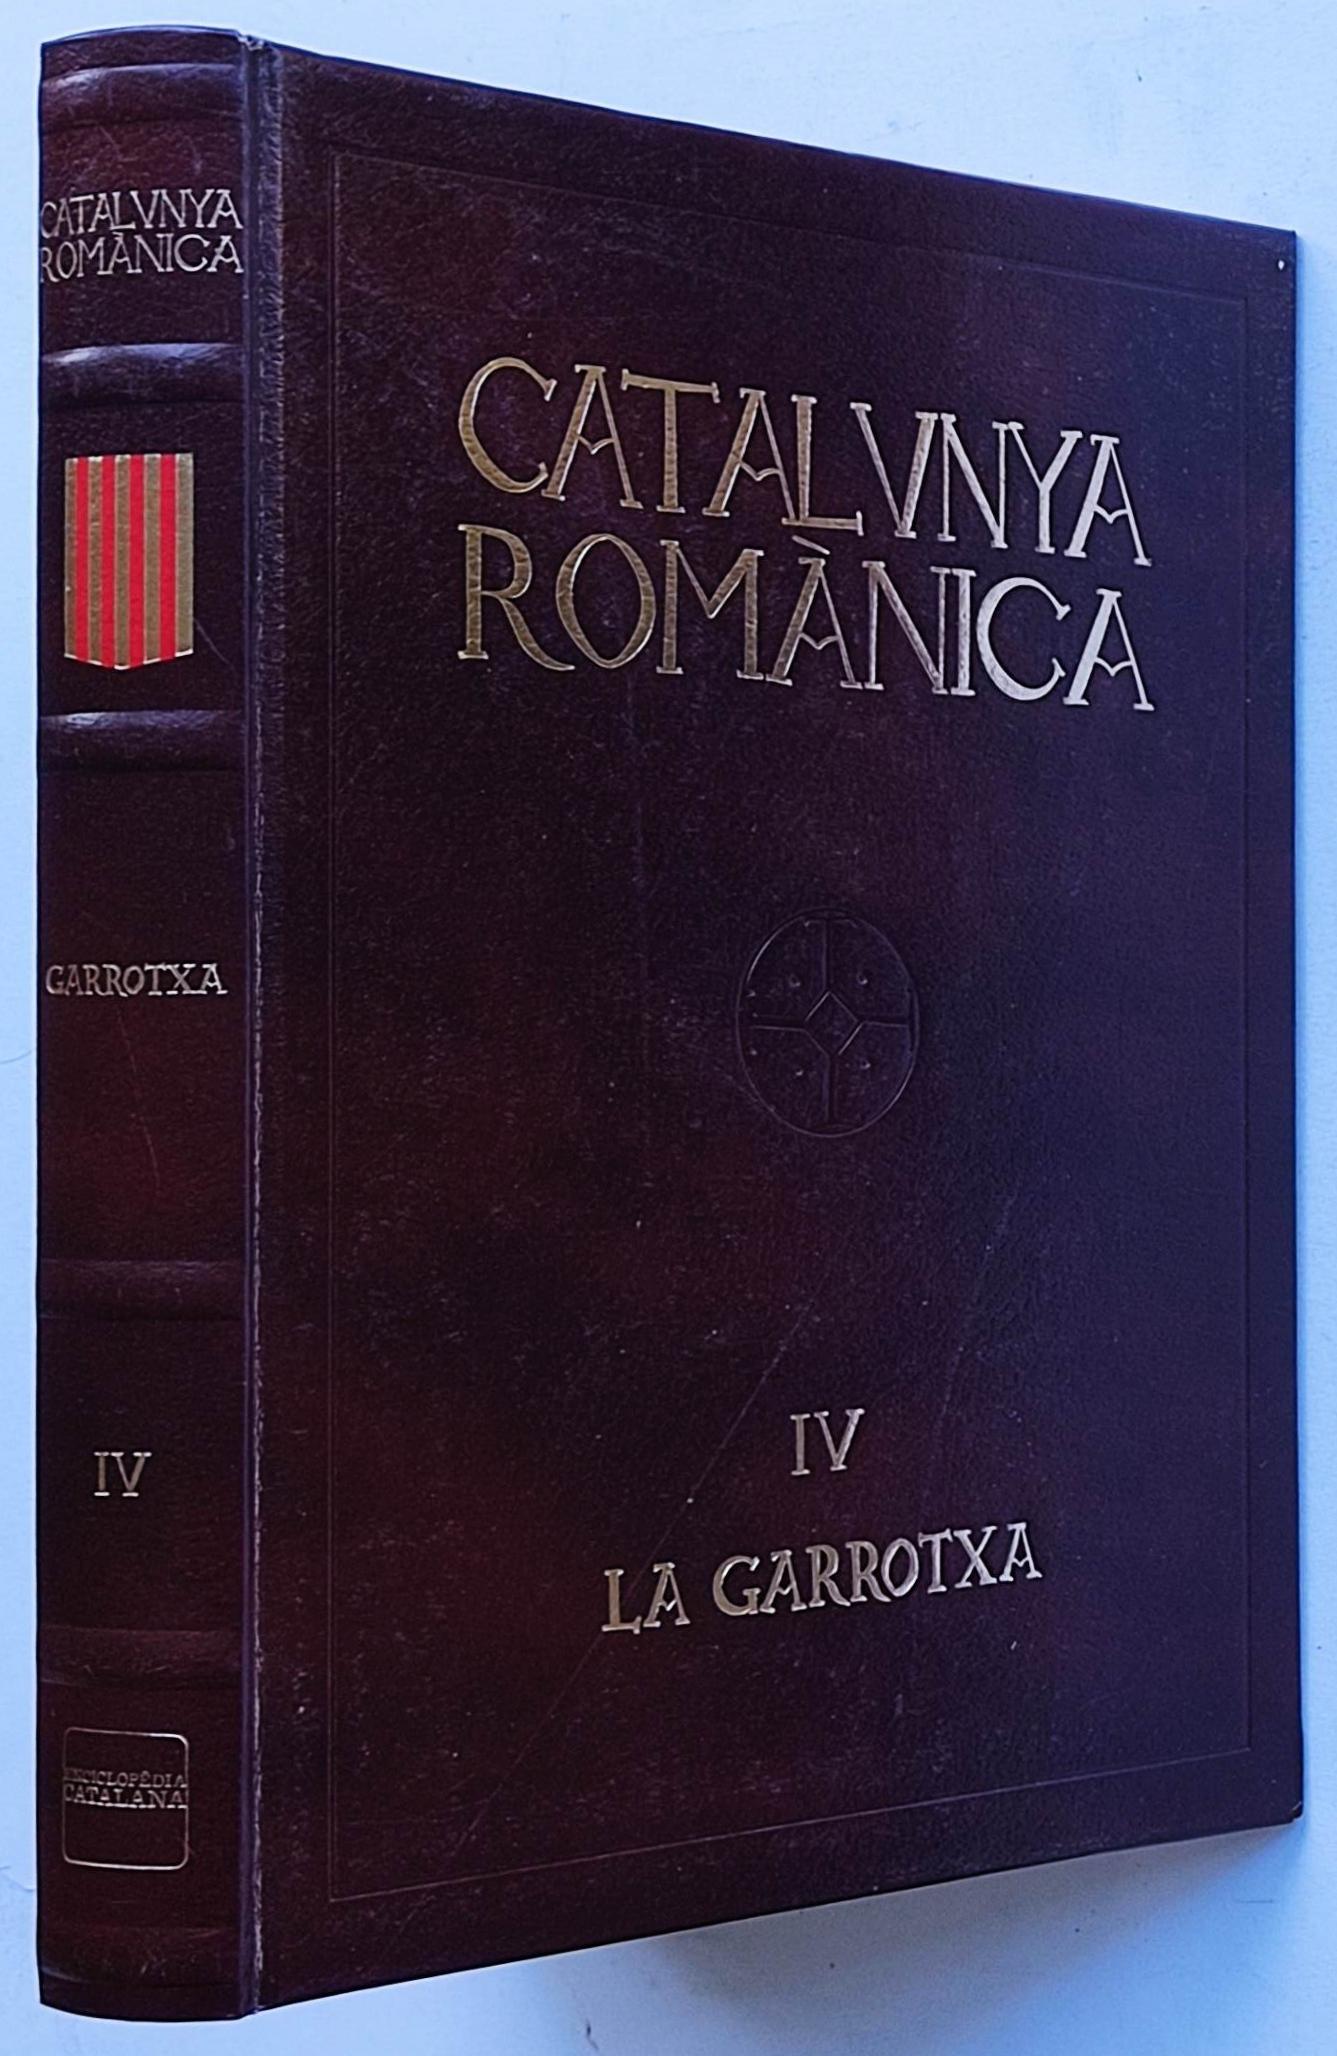 CATALUNYA ROMÀNICA:  LA GARROTXA